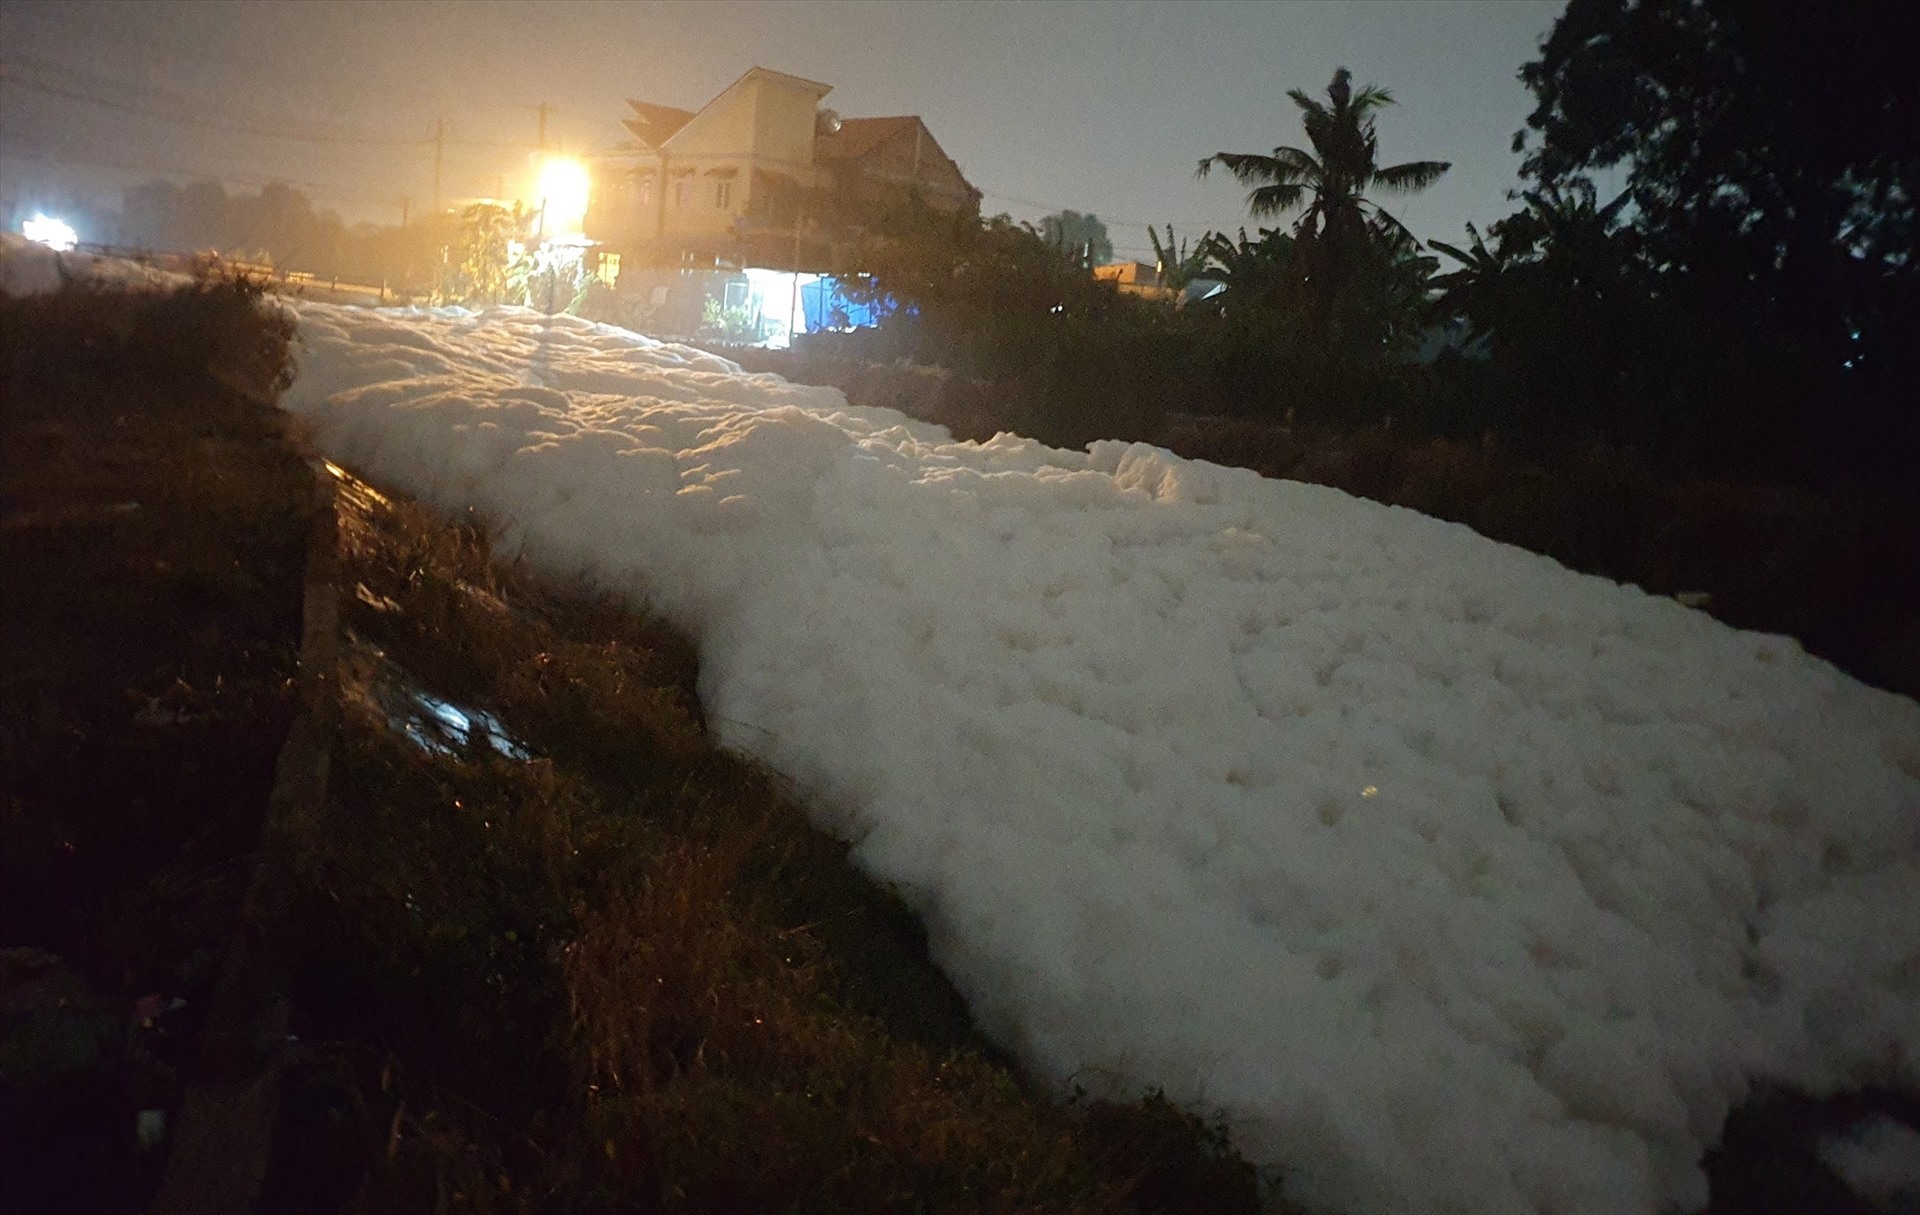 Suối Chợ tại thị xã Tân Uyên, Bình Dương nổi đầy bọt trắng sau cơn mưa lớn ngày 8.4. Hiện cơ quan chức năng vẫn đang xác minh làm rõ. Ảnh: Thanh Hải